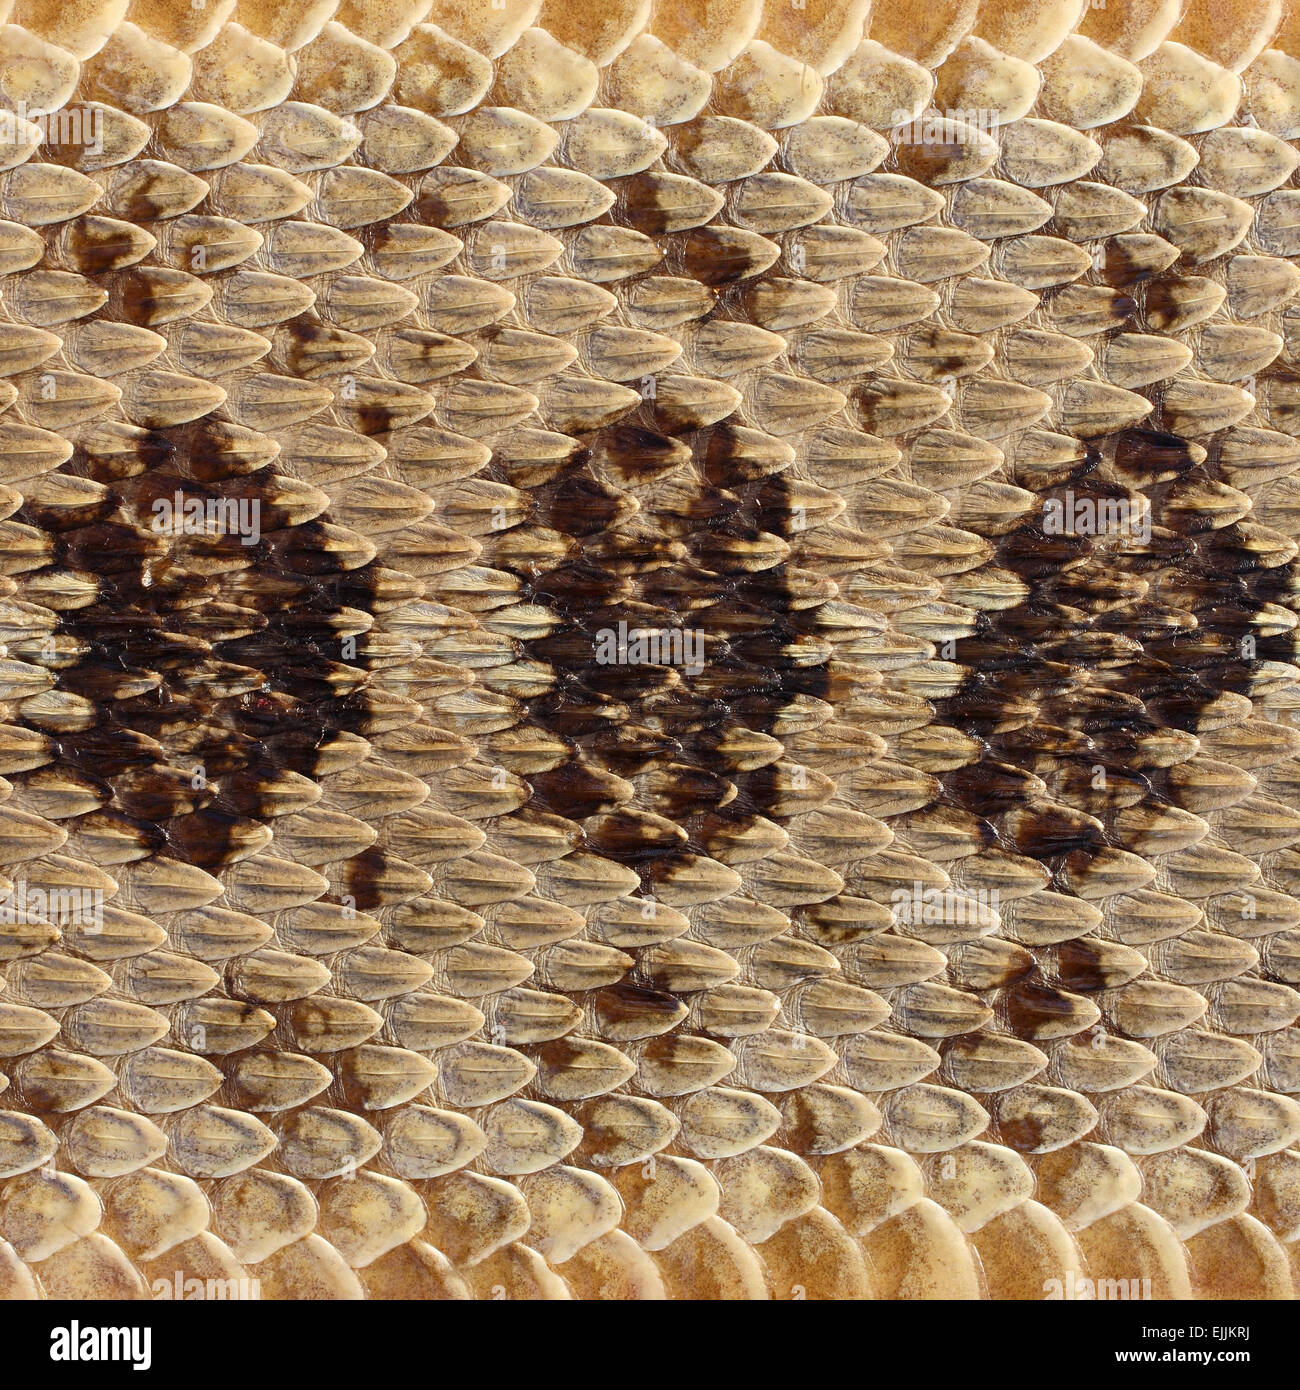 close-up rattlesnake skin background Stock Photo